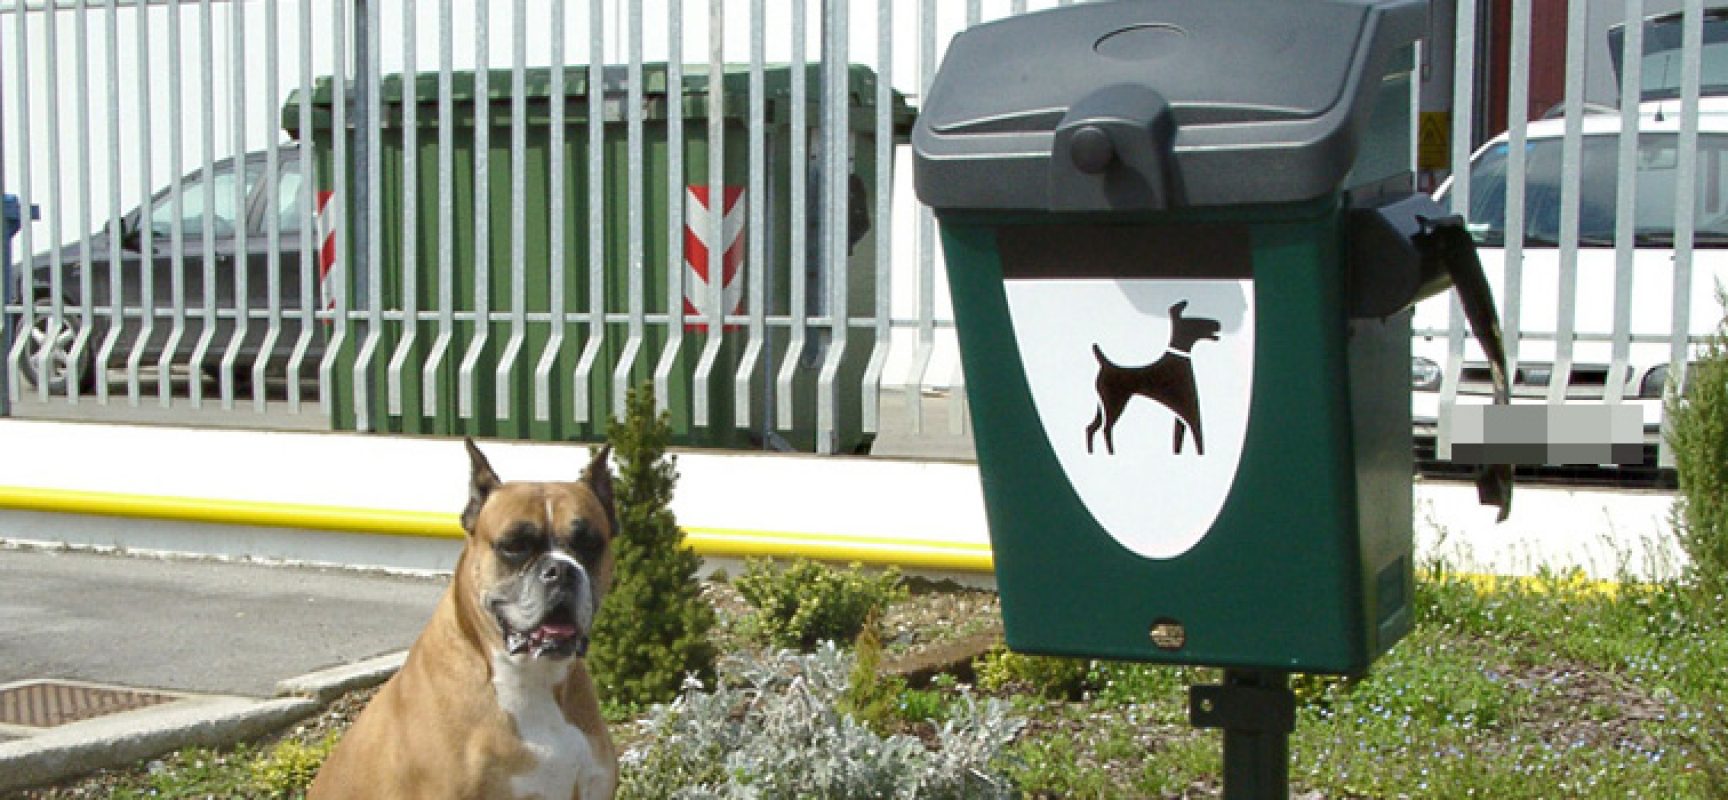 Deiezioni canine, ordinanza Sindaco Angarano stabilisce ulteriori obblighi contro incivili